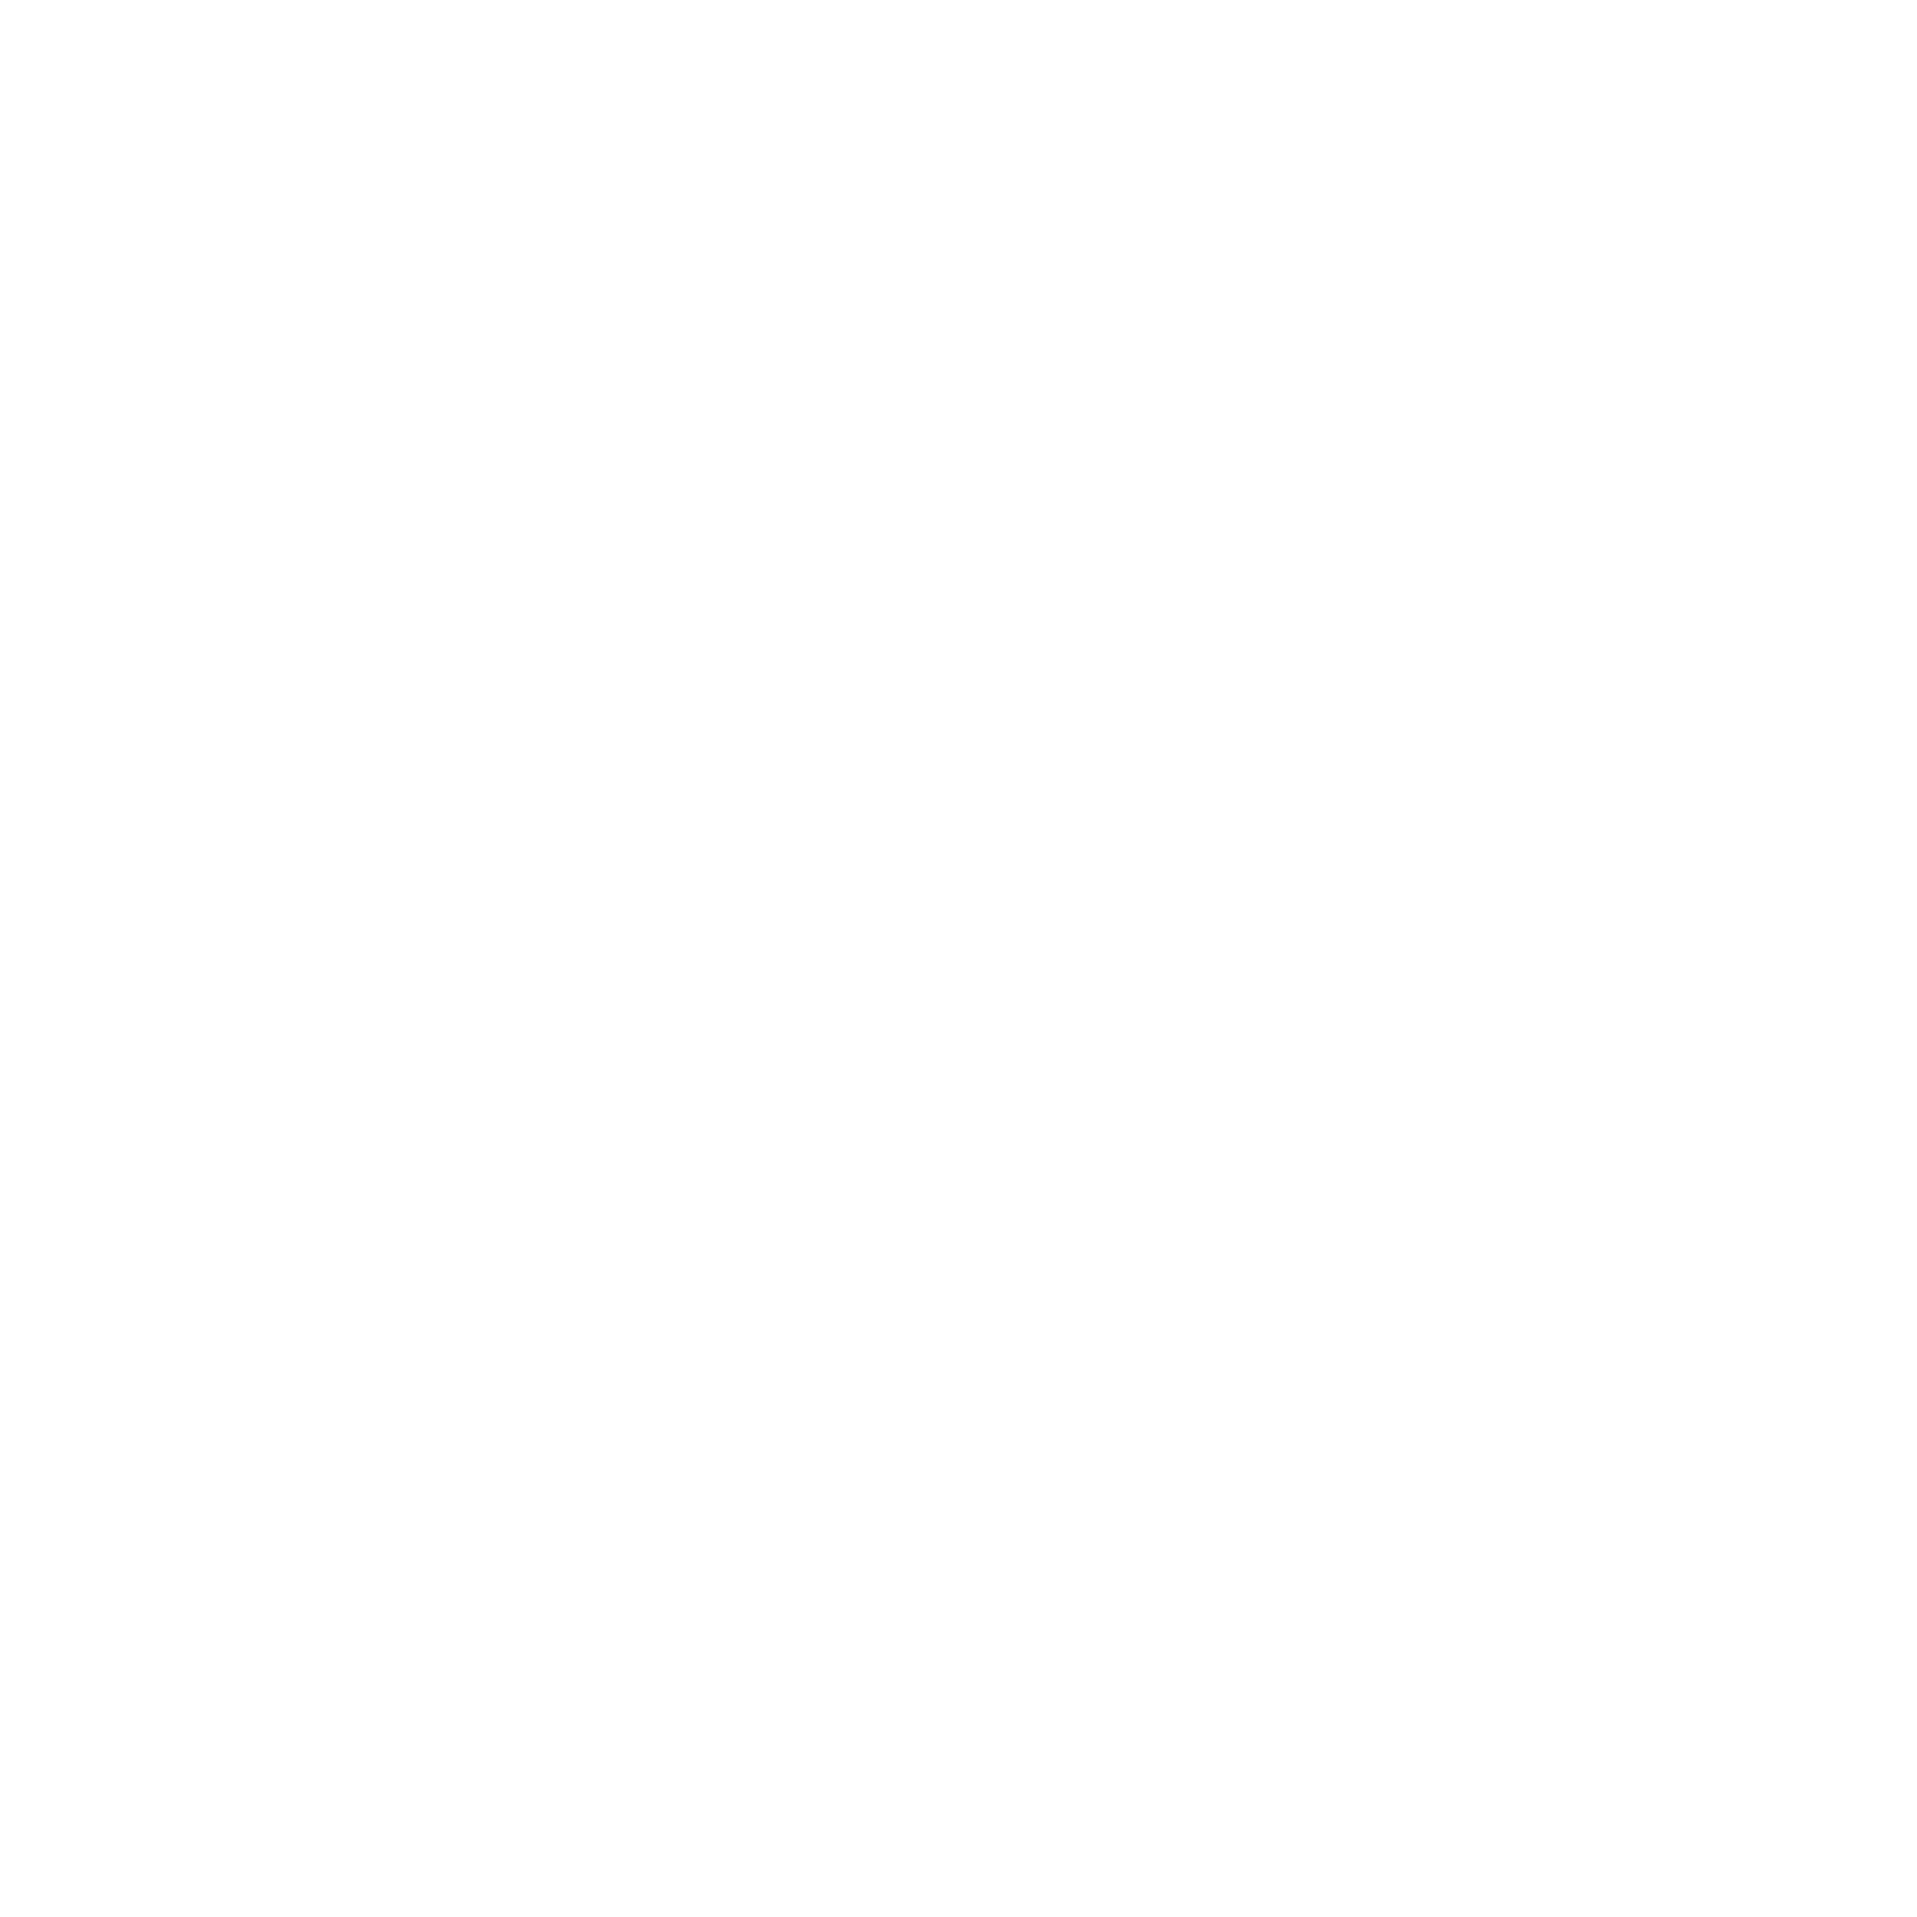 GREENGAGE logo white